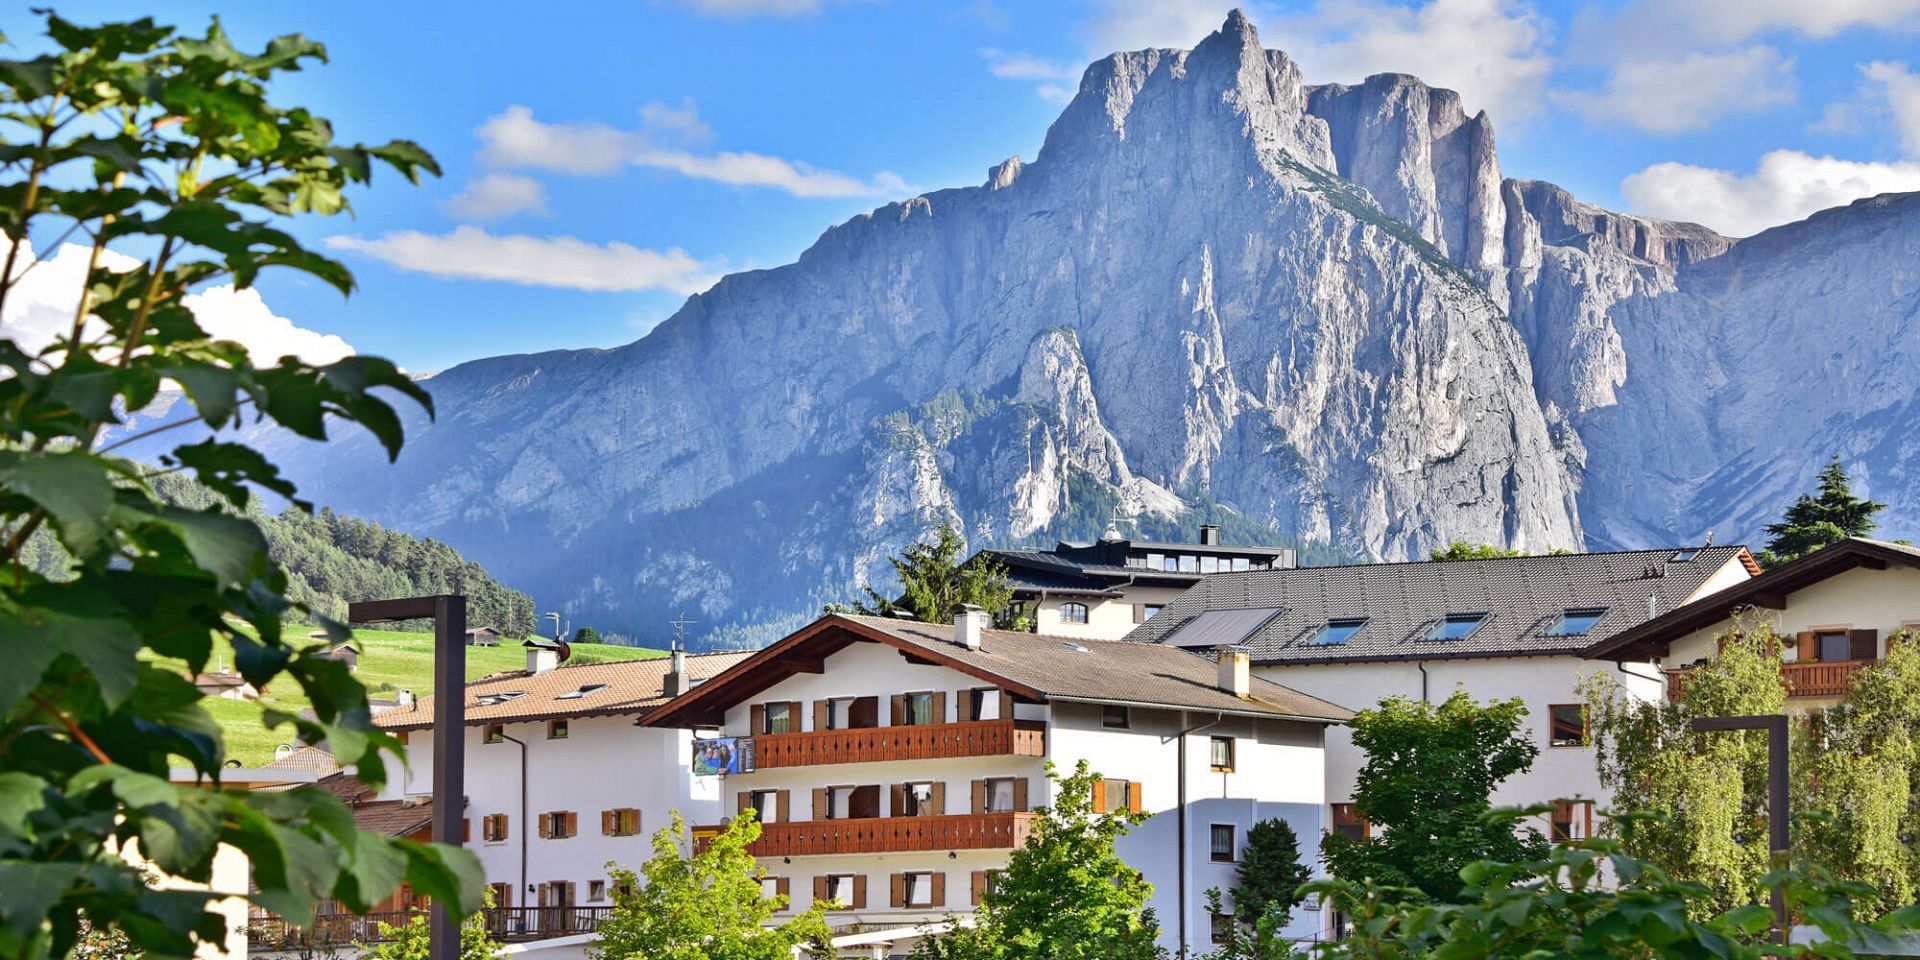 Urlaub in Kastelruth - Ferienwohnungen in den Dolomiten / Südtirol